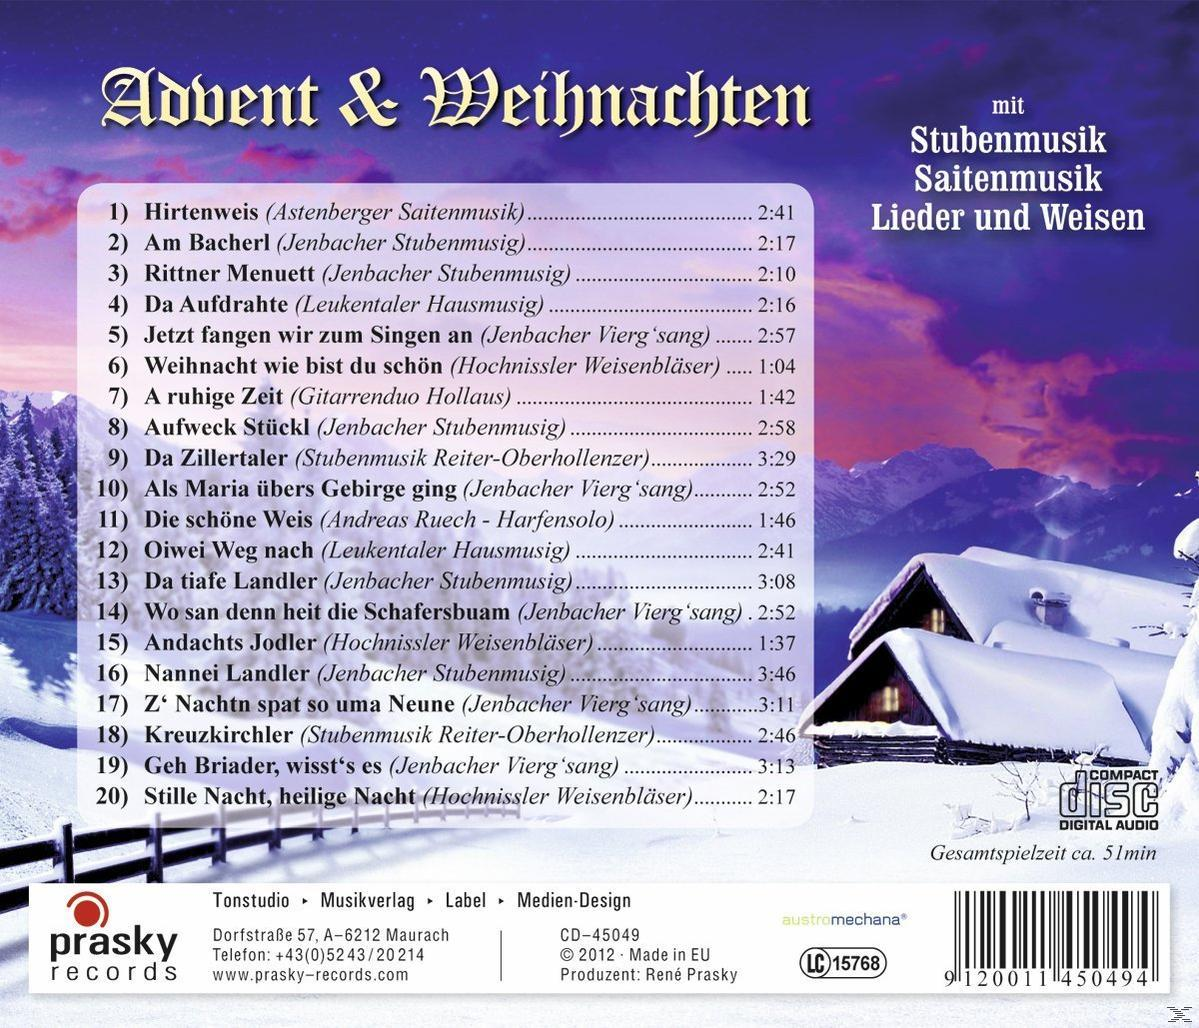 Weihnachten Lieder Weisen Mit VARIOUS Stubenmusik, Saitenmusik, - - Und & Advent (CD)